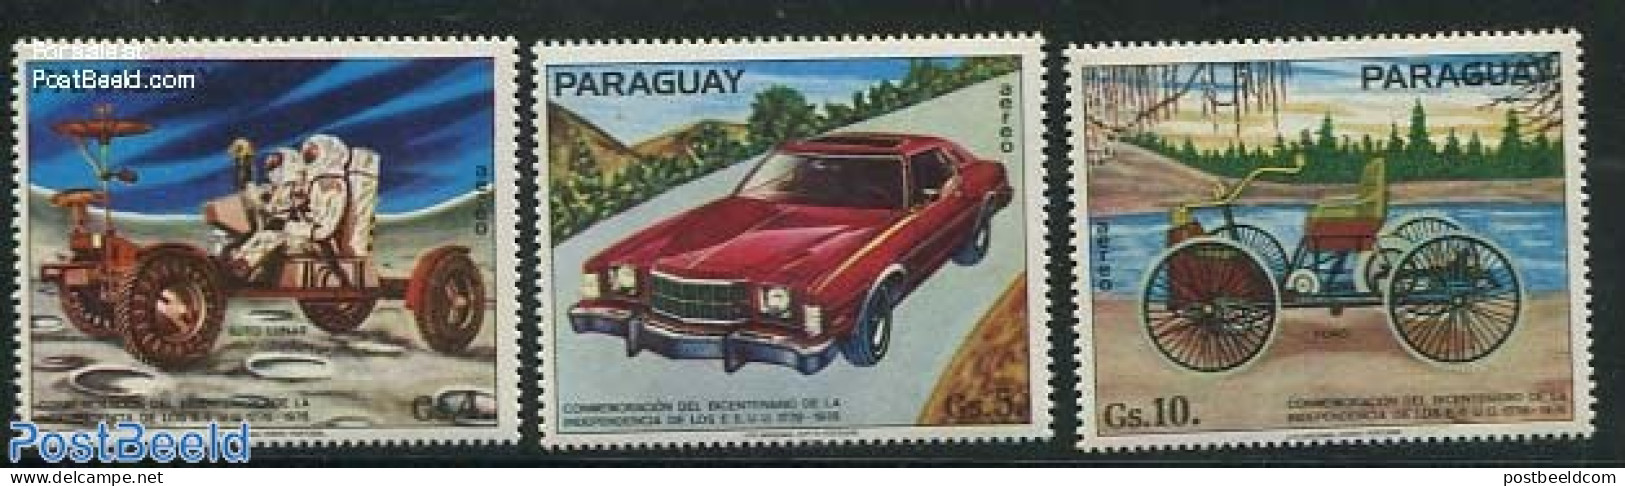 Paraguay 1975 Automobiles 3v, Mint NH, Transport - Automobiles - Space Exploration - Auto's